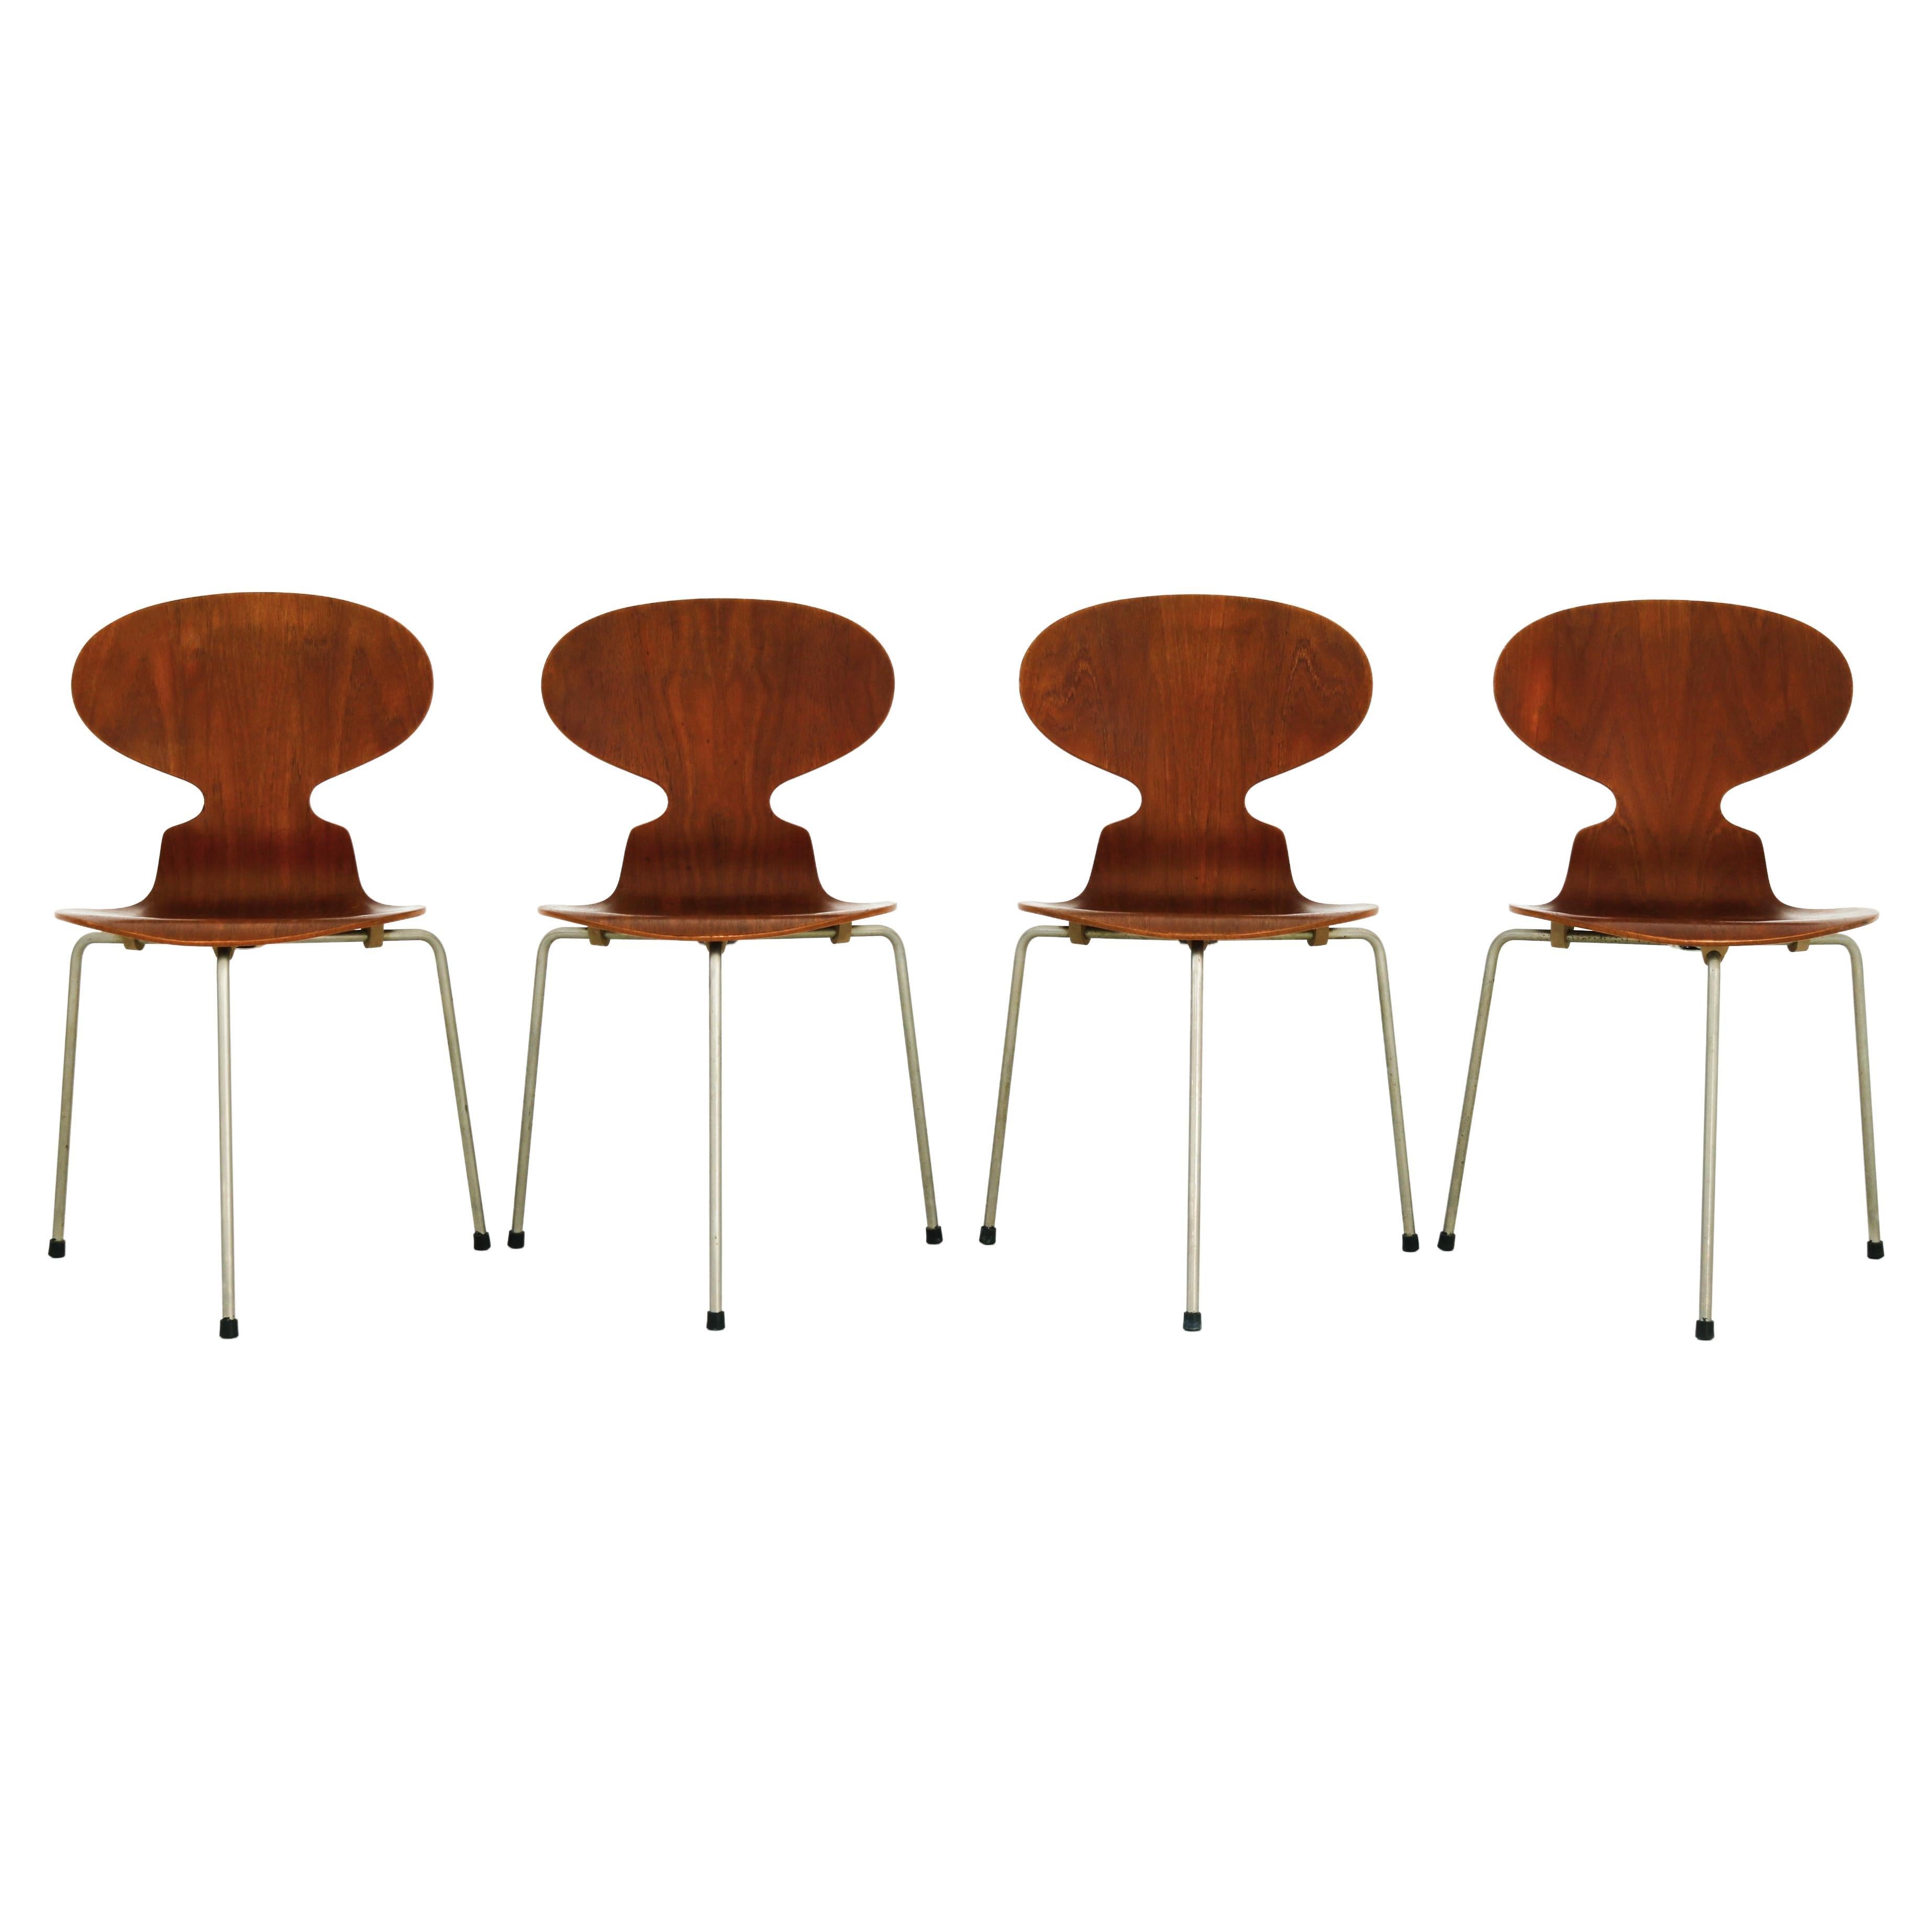 Arne Jacobsen Modell 3100 „Ant“-Stühle von Fritz Hansen aus Teakholz und Stahl, 1950er Jahre